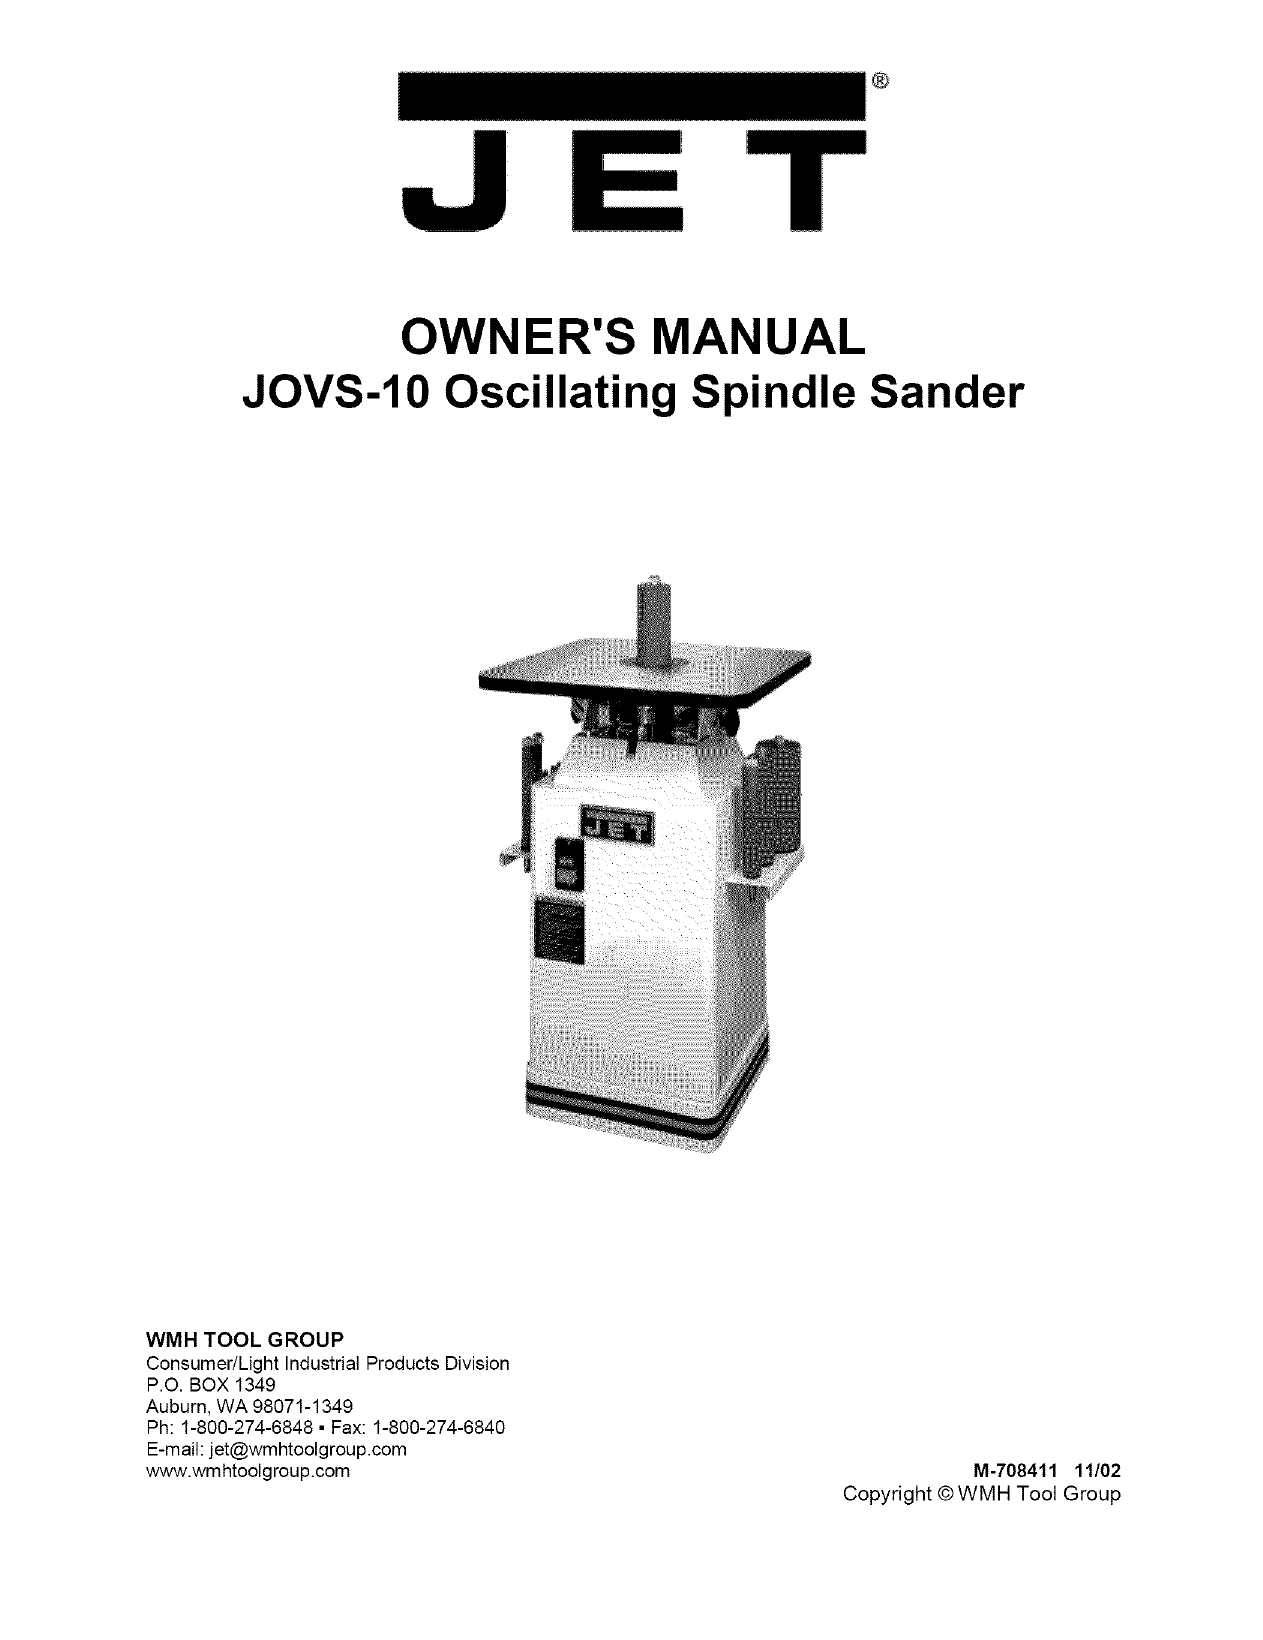 Jet OVS10 Ossillating Spindle Sander 3/8 x 6 spindle 